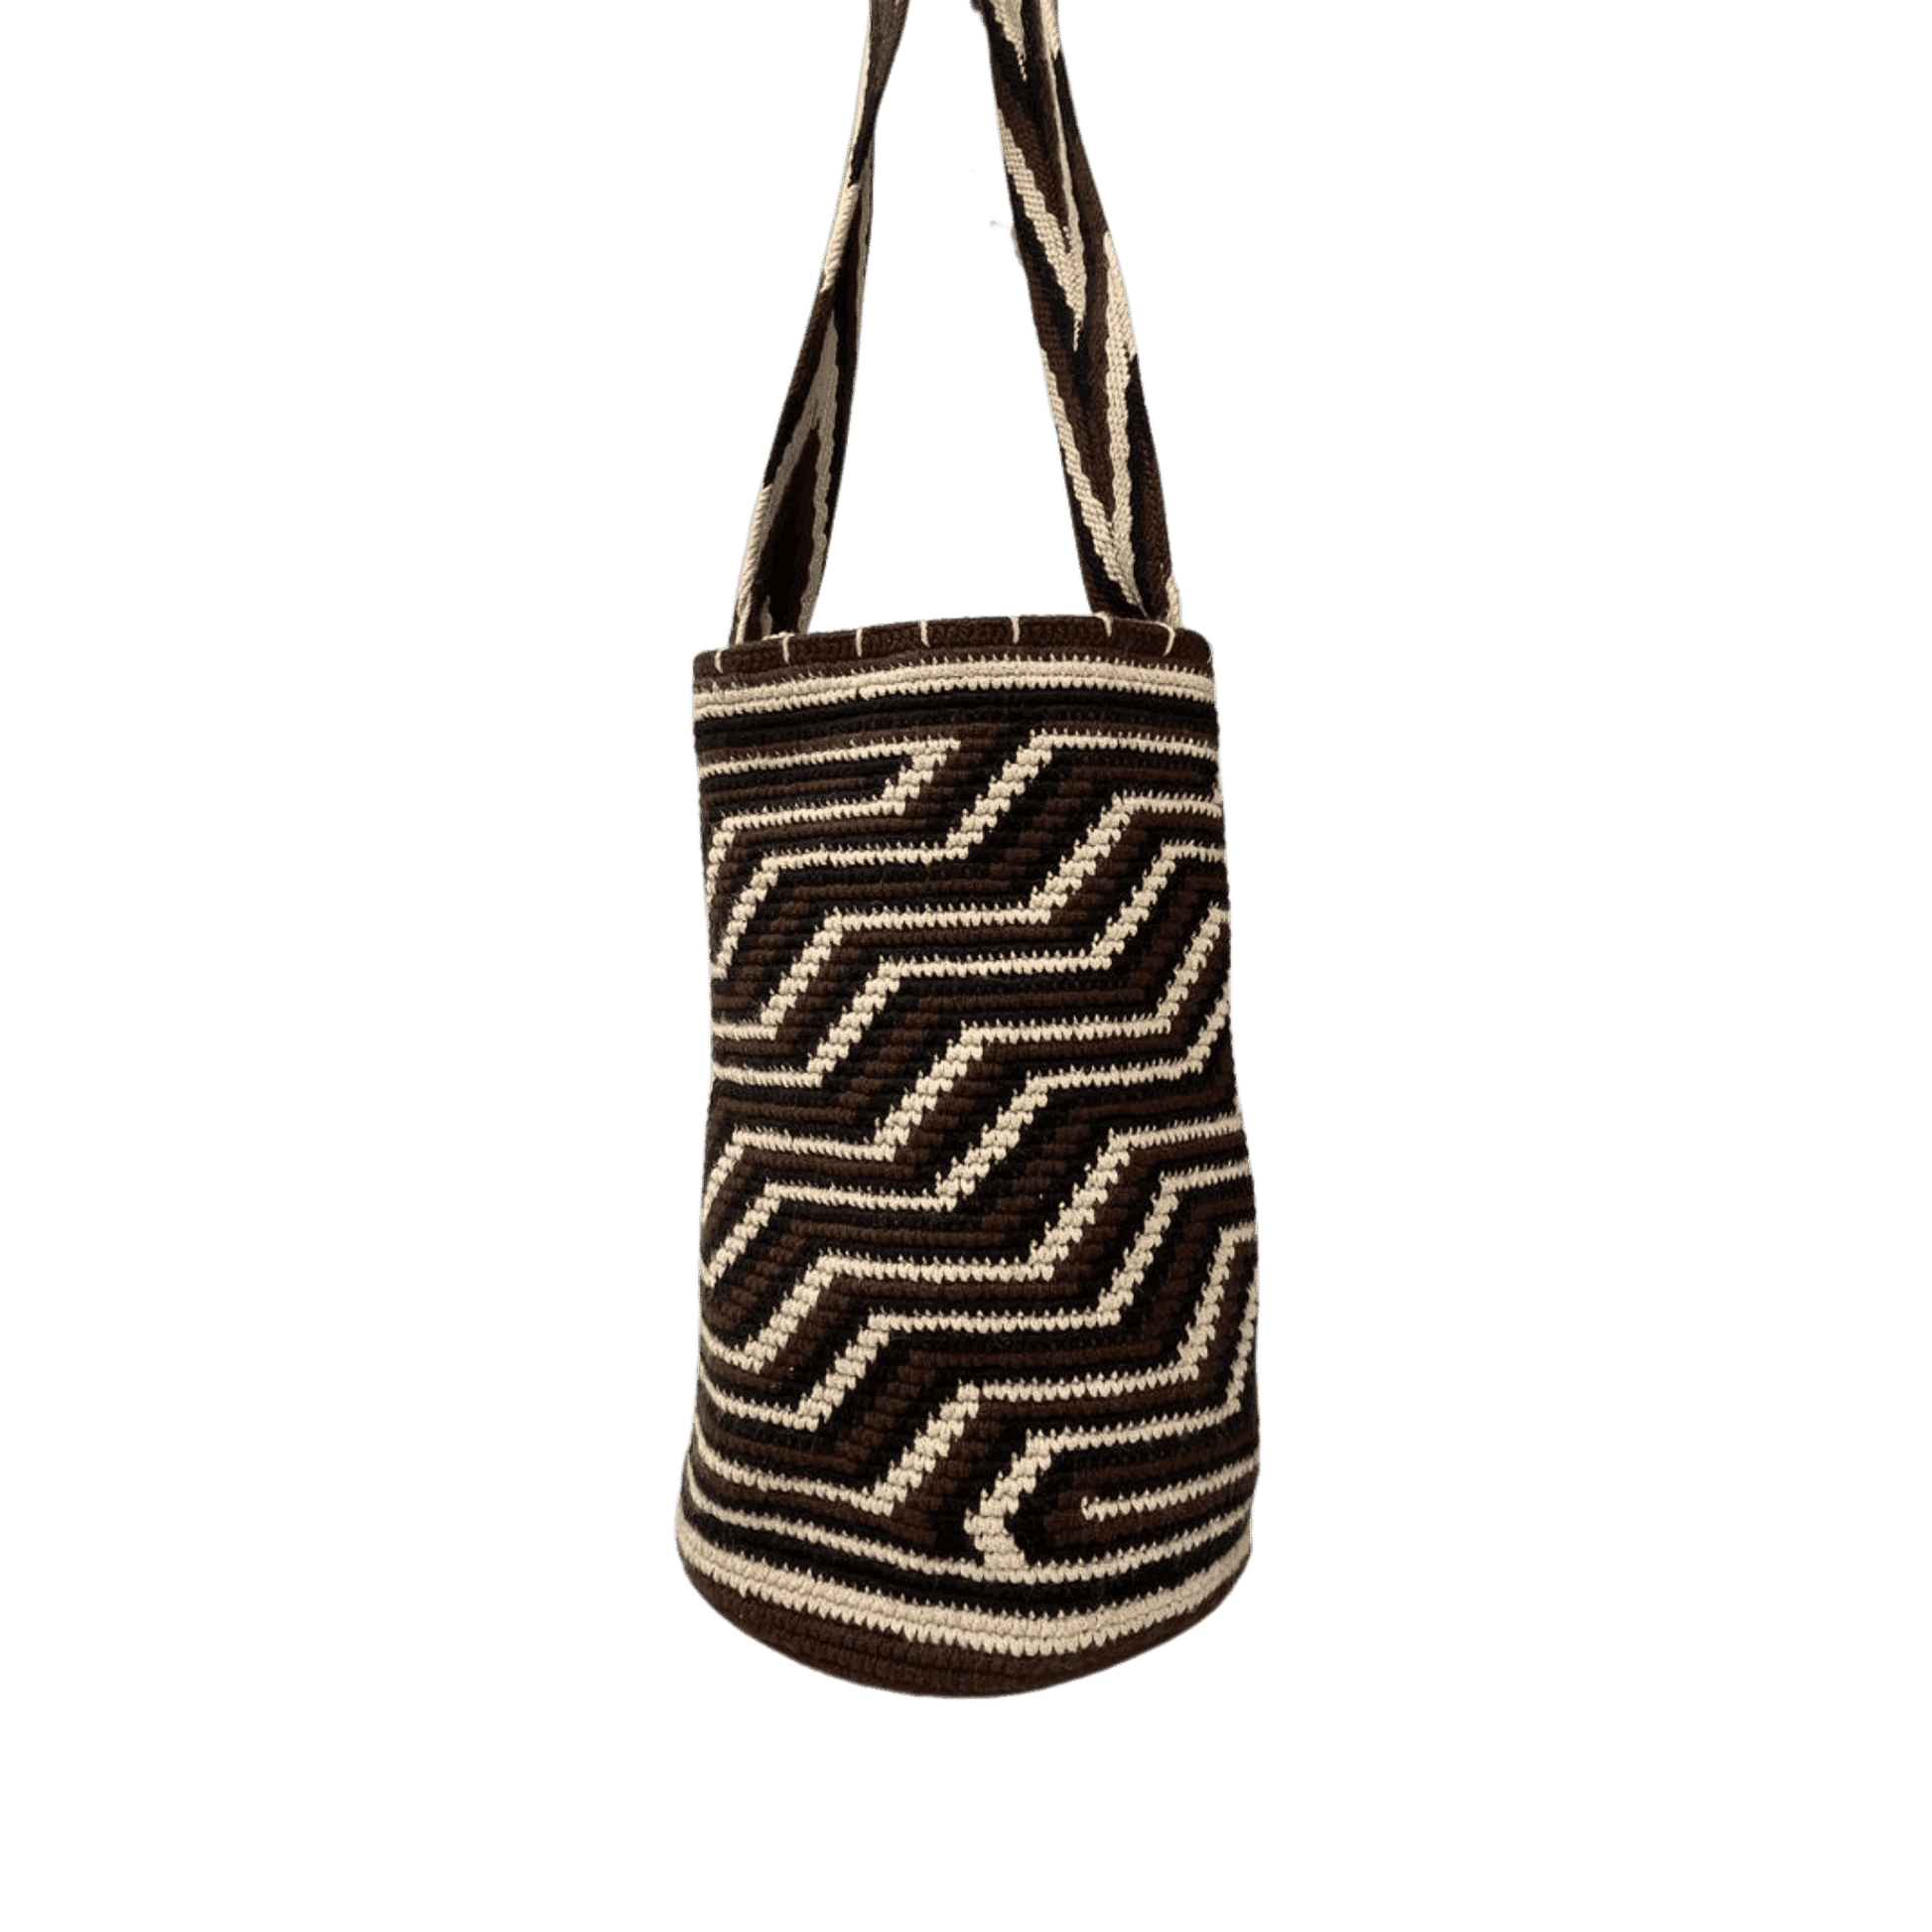 Mochila Wayuu original para hombre colores café, negro y beige